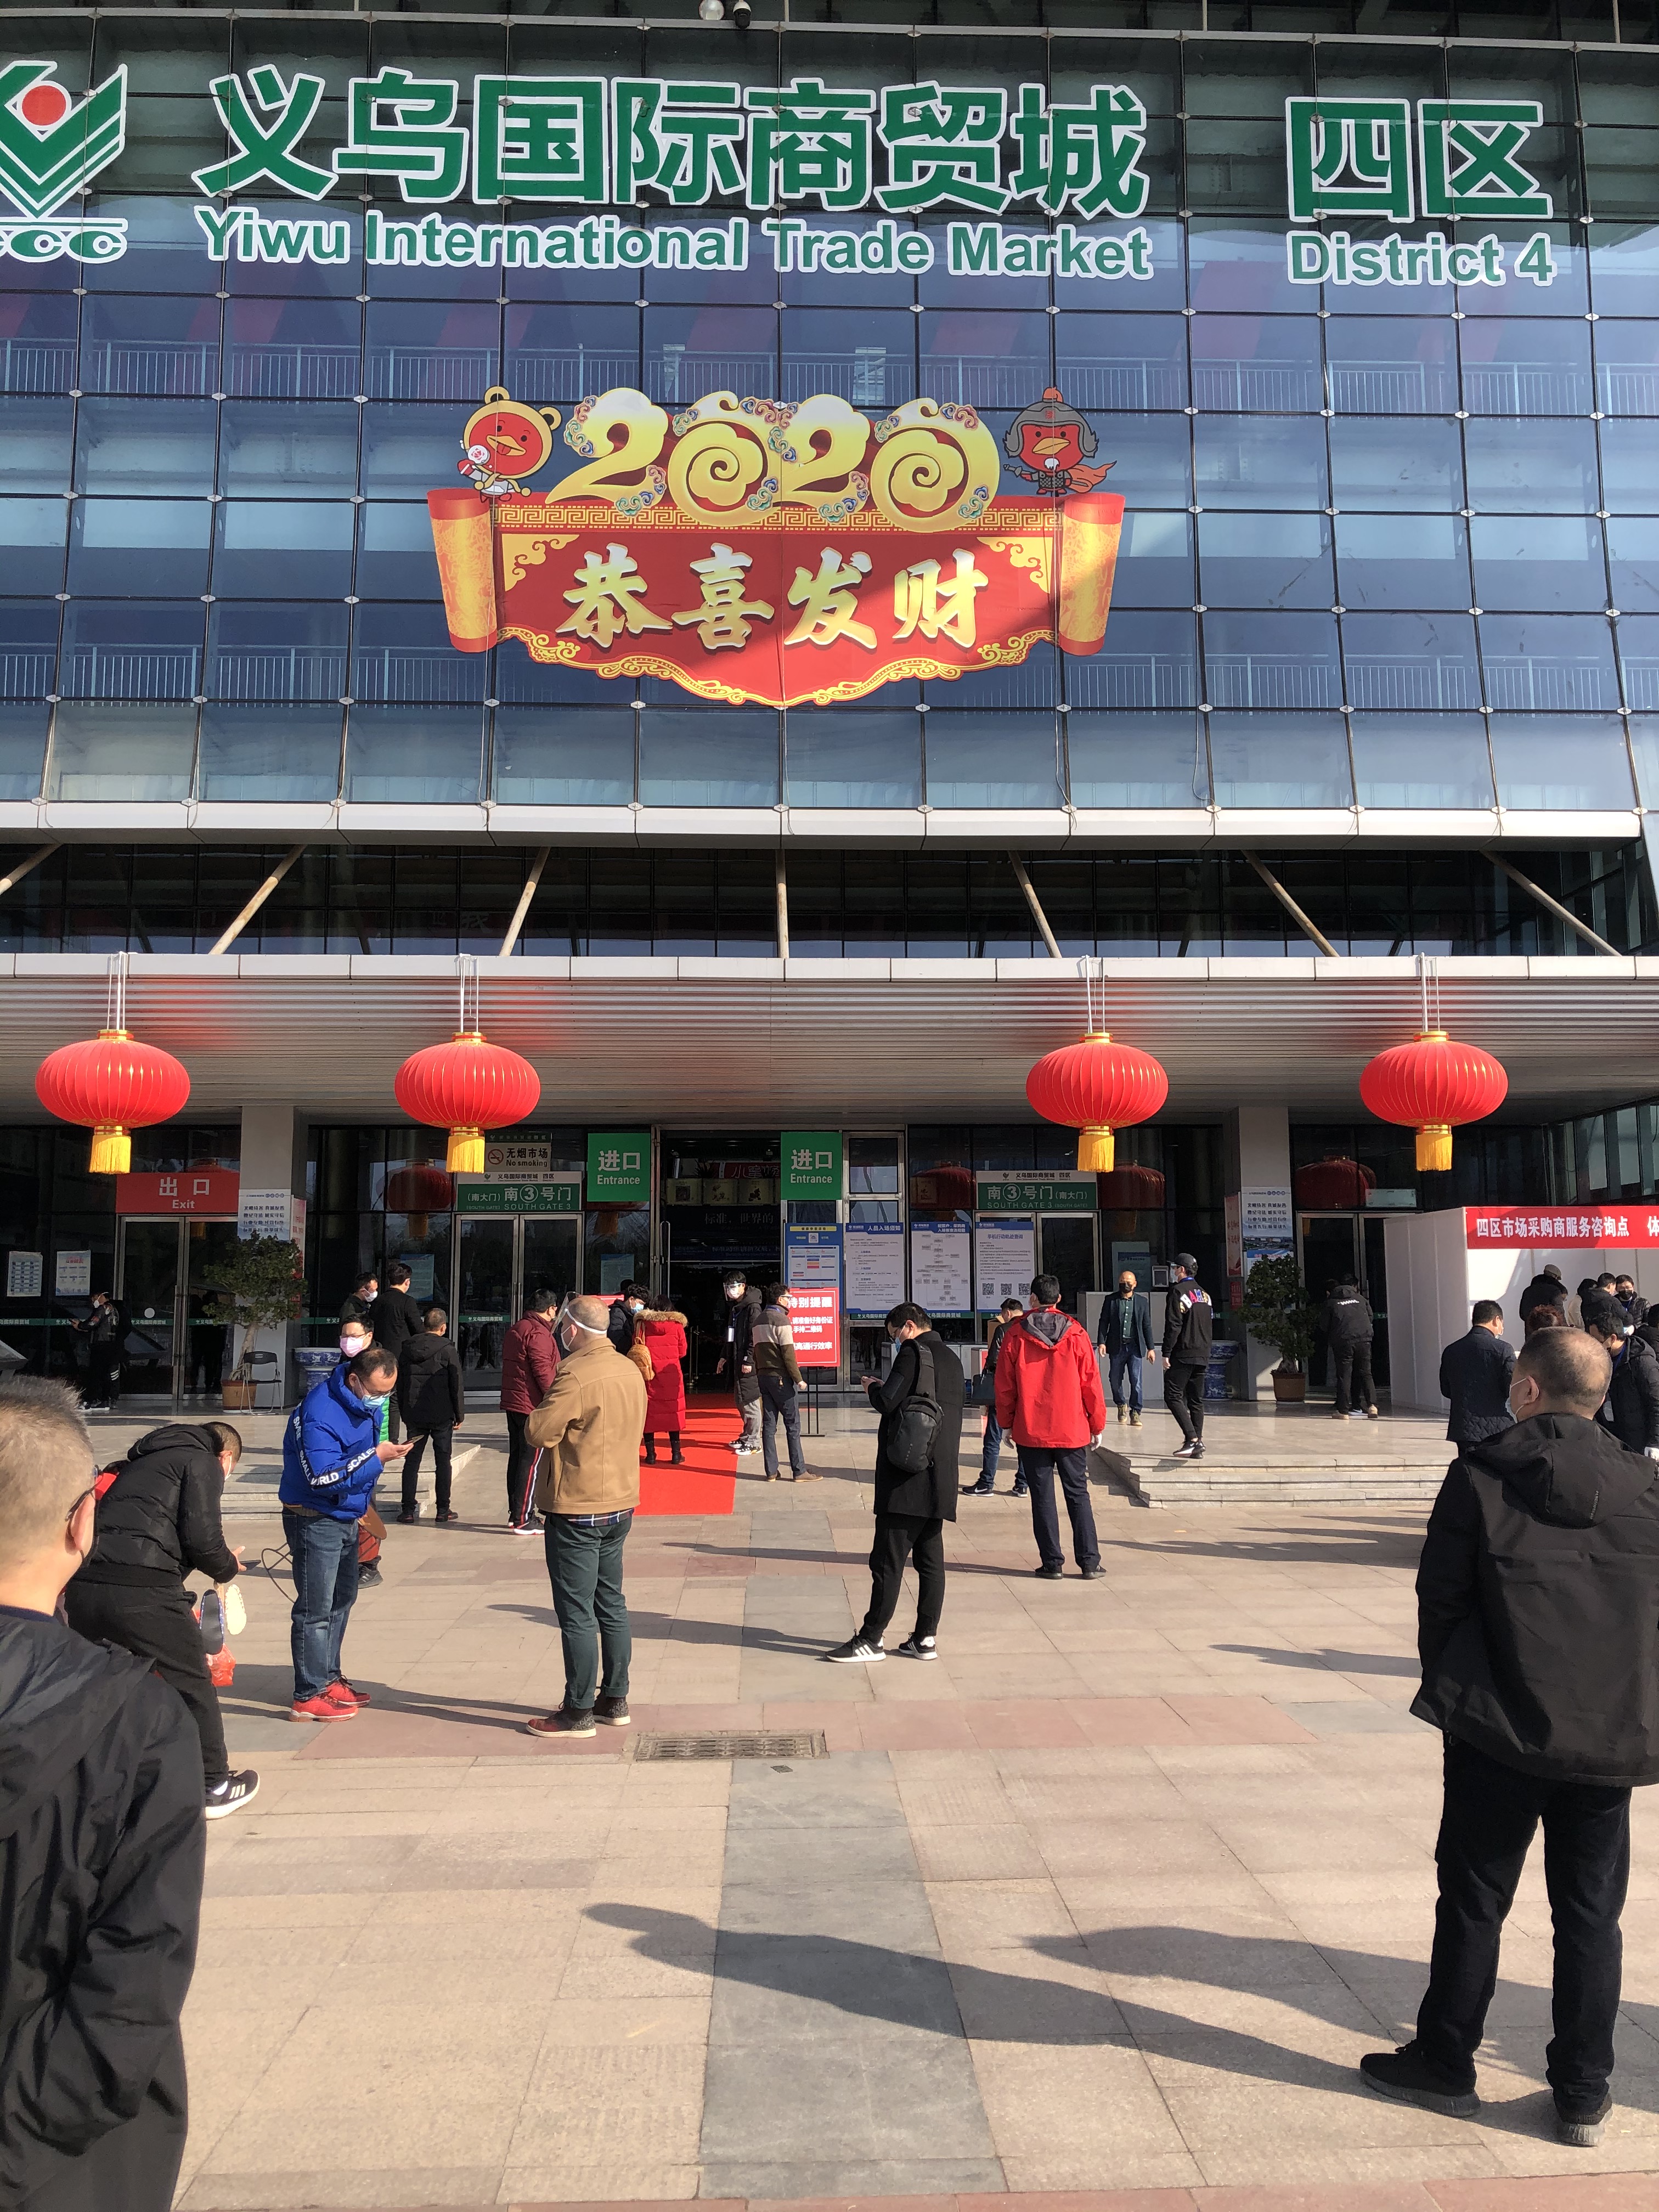 Yiwu Market District 4 Opened Door After Virus